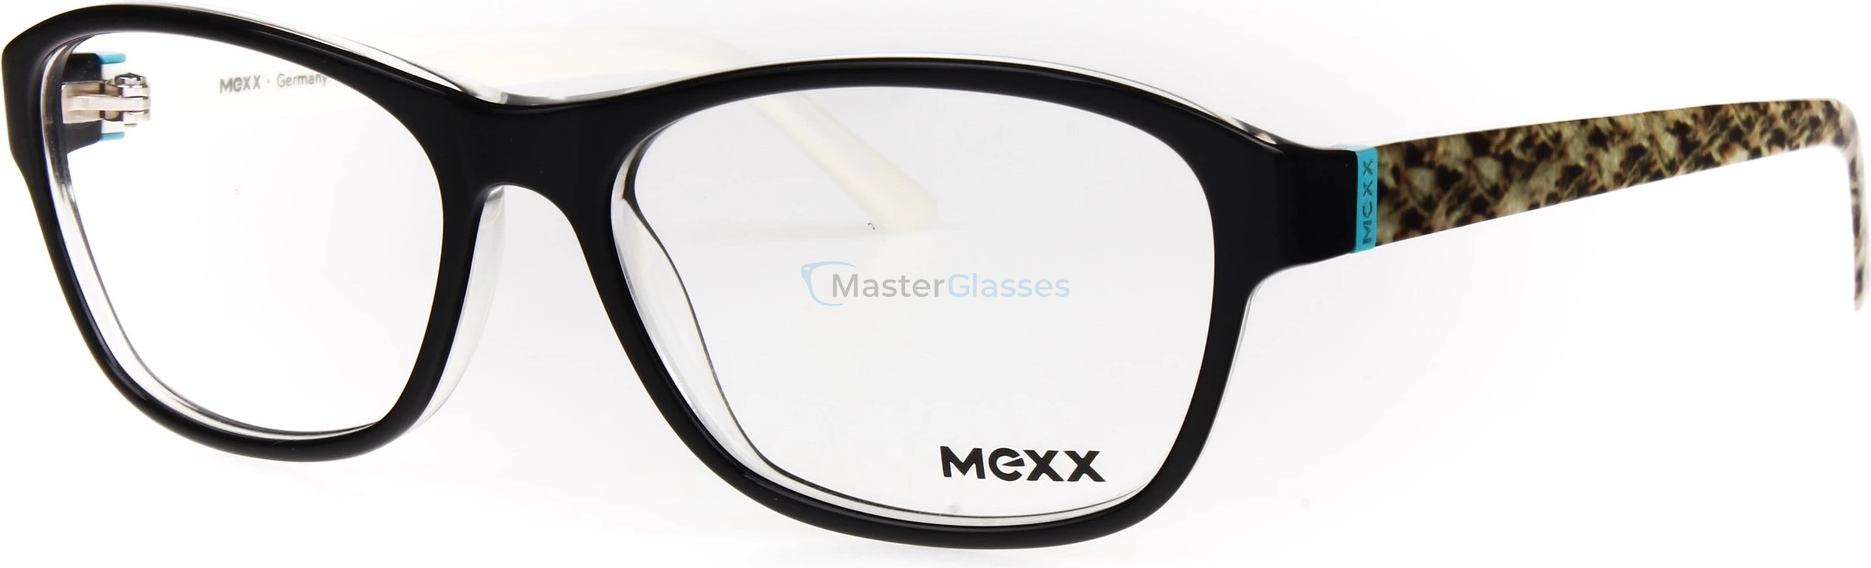  MEXX 5303 100 53/15